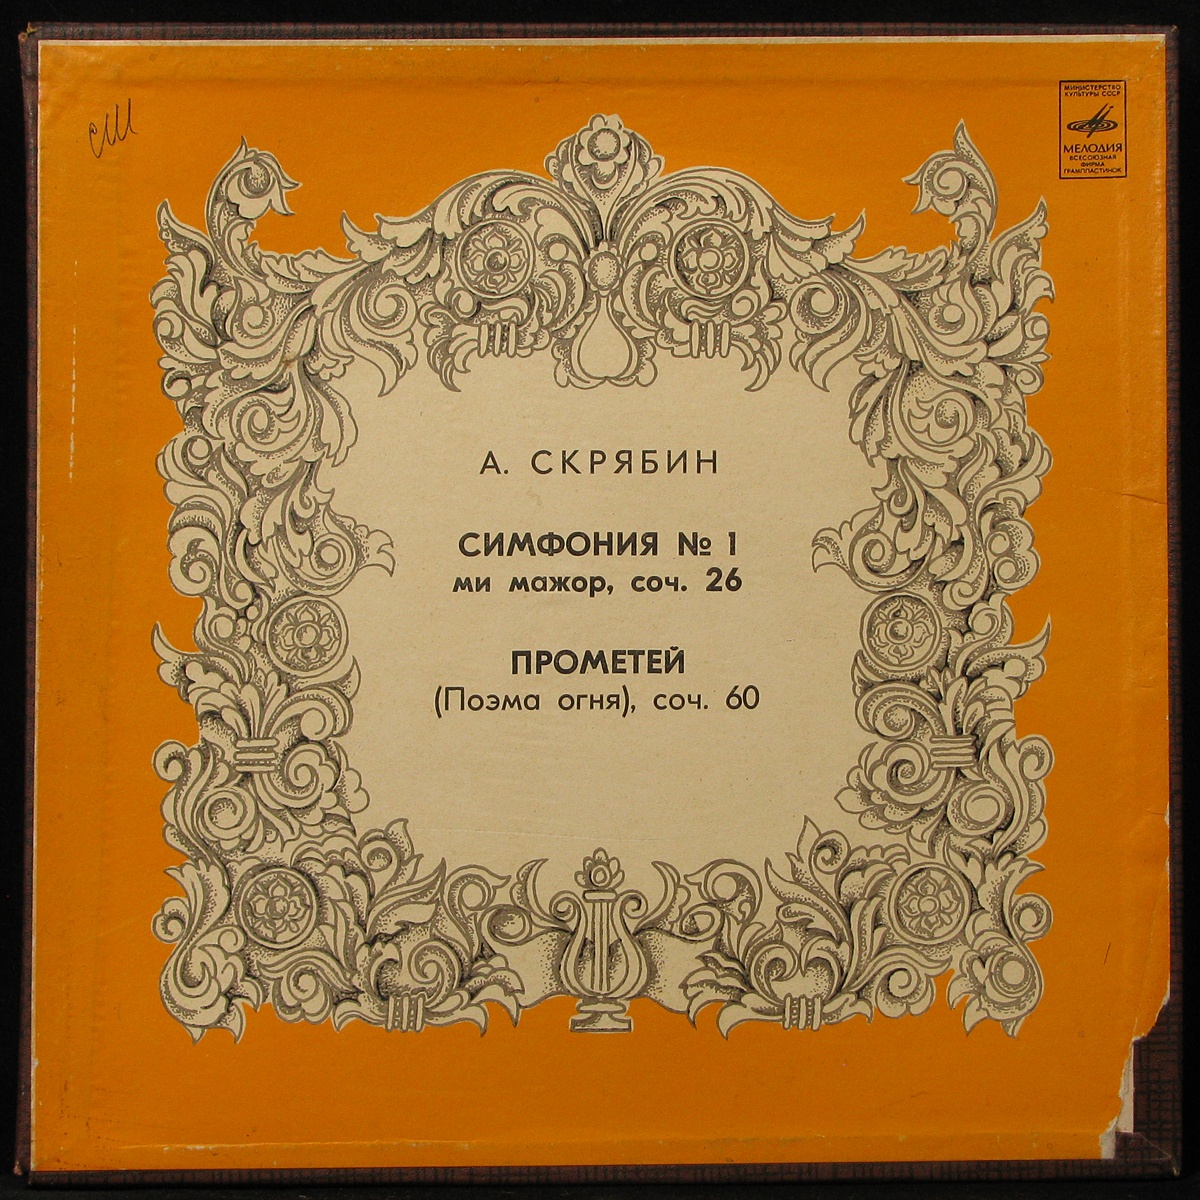 LP Константин Иванов — Скрябин: Симфония № 1 / Прометей (2LP Box) фото